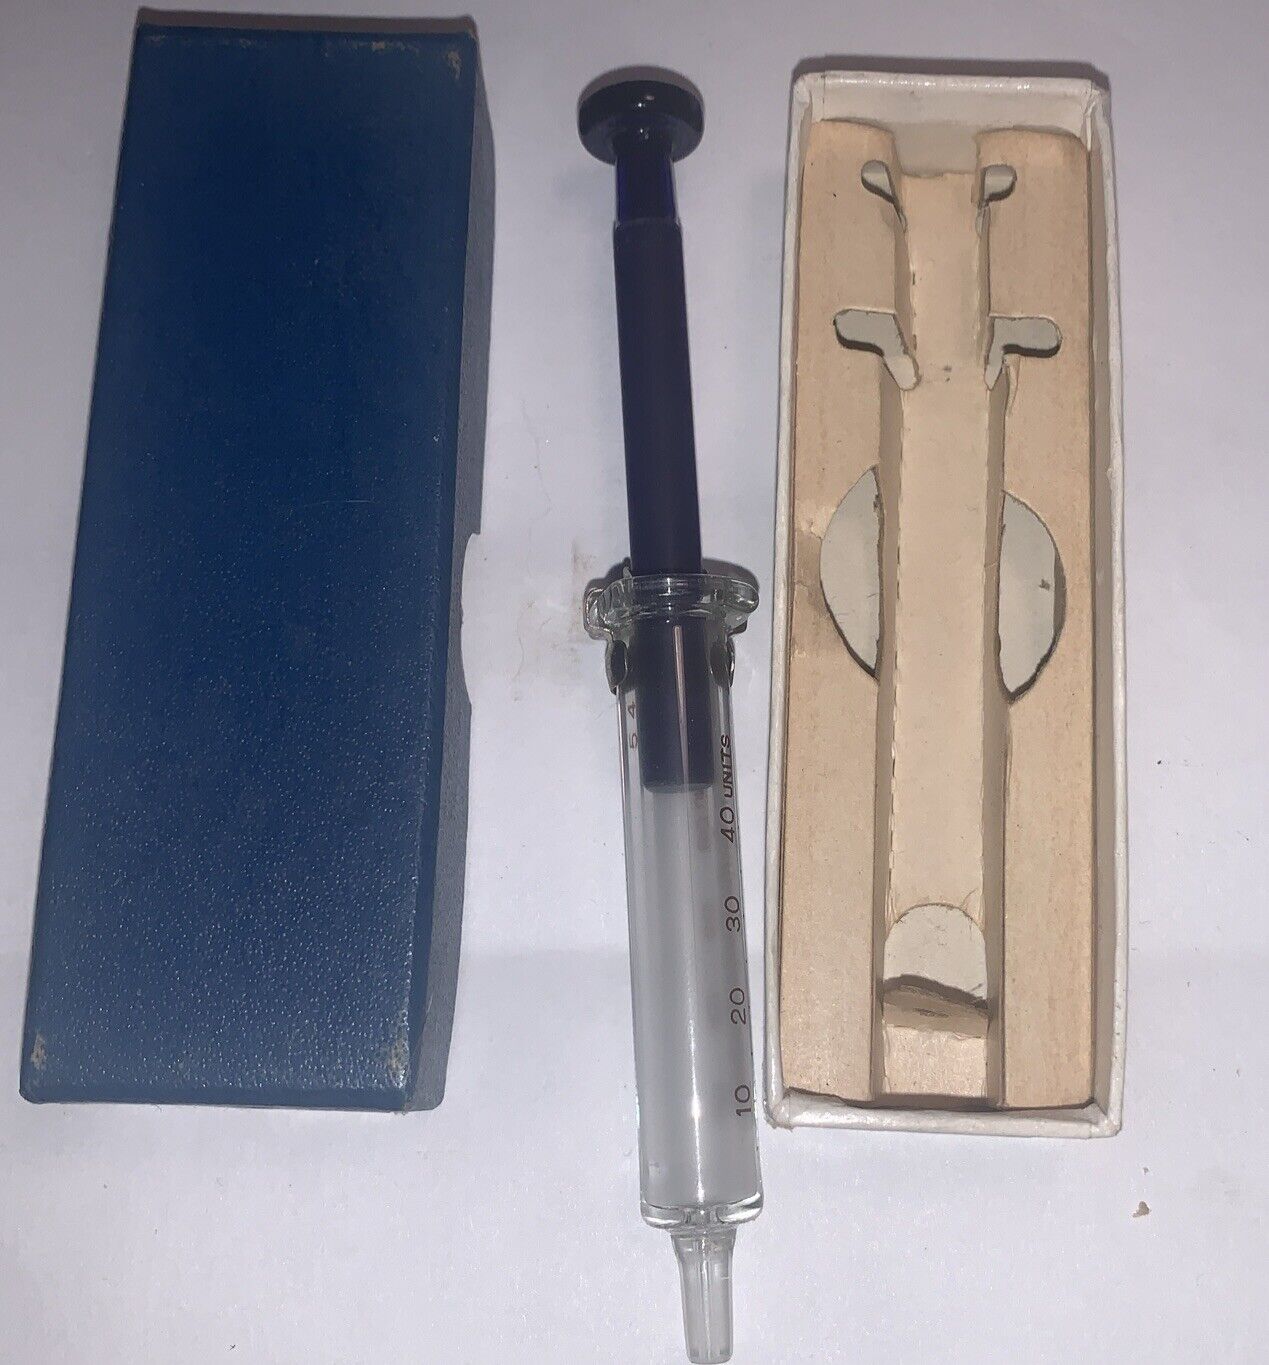 Vintage Cobalt Blue Glass Insulin Syringe in box Looks unused